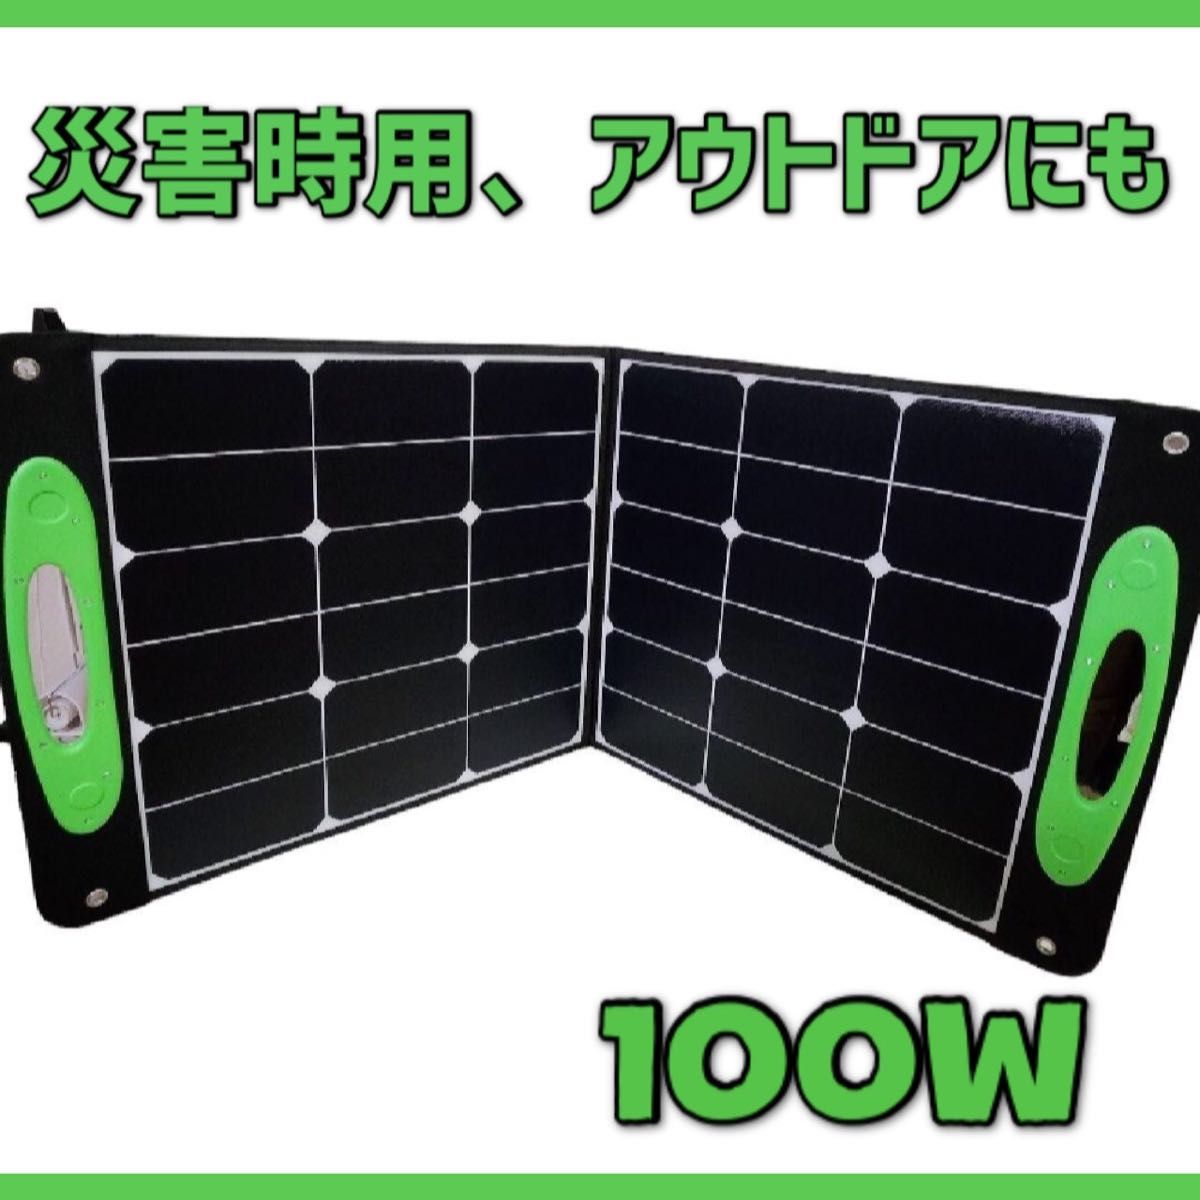 【ソーラーパネル】100W 折り畳み式 非常用 防災 スタンド付 持ち運び便利 ソーラーパネル 太陽光発電 太陽光パネル 折り畳み